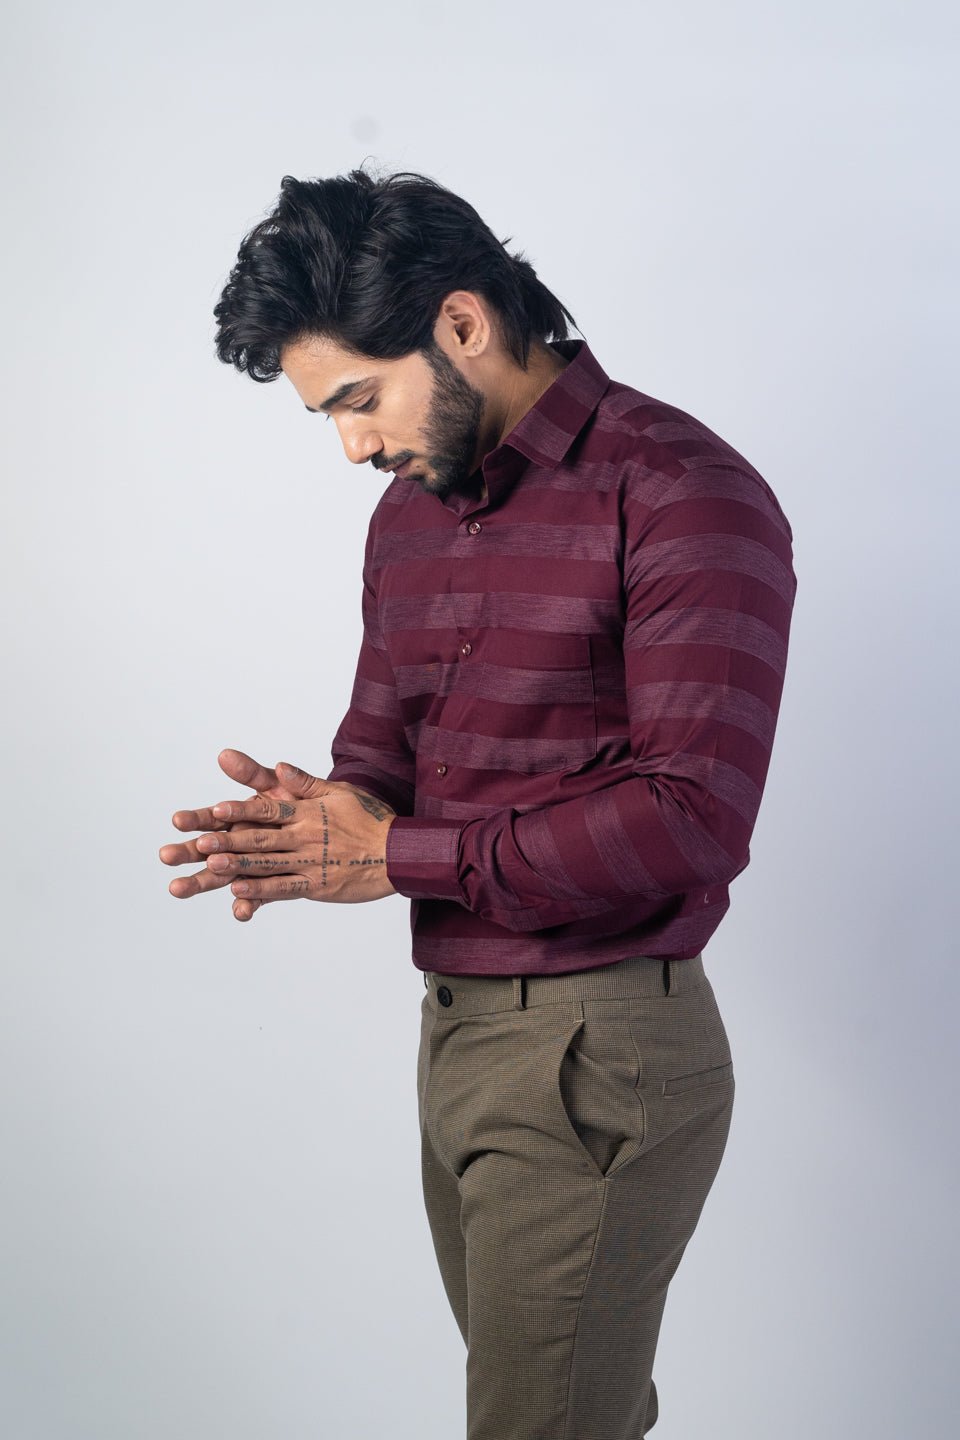 Wine Red Color Cotton Stripe Shirt For Men - Punekar Cotton